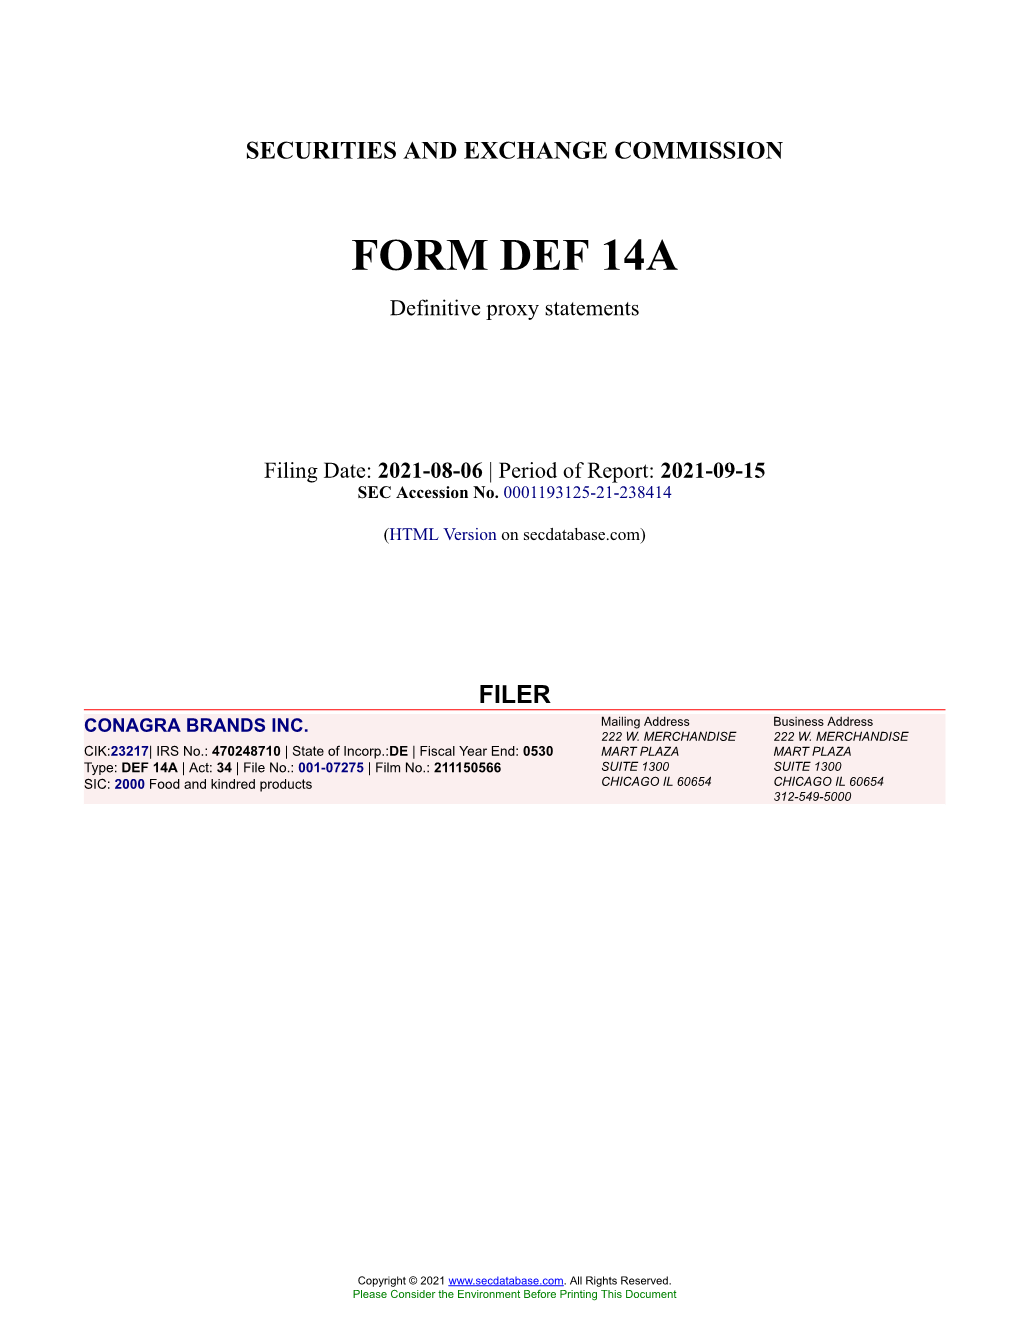 CONAGRA BRANDS INC. Form DEF 14A Filed 2021-08-06